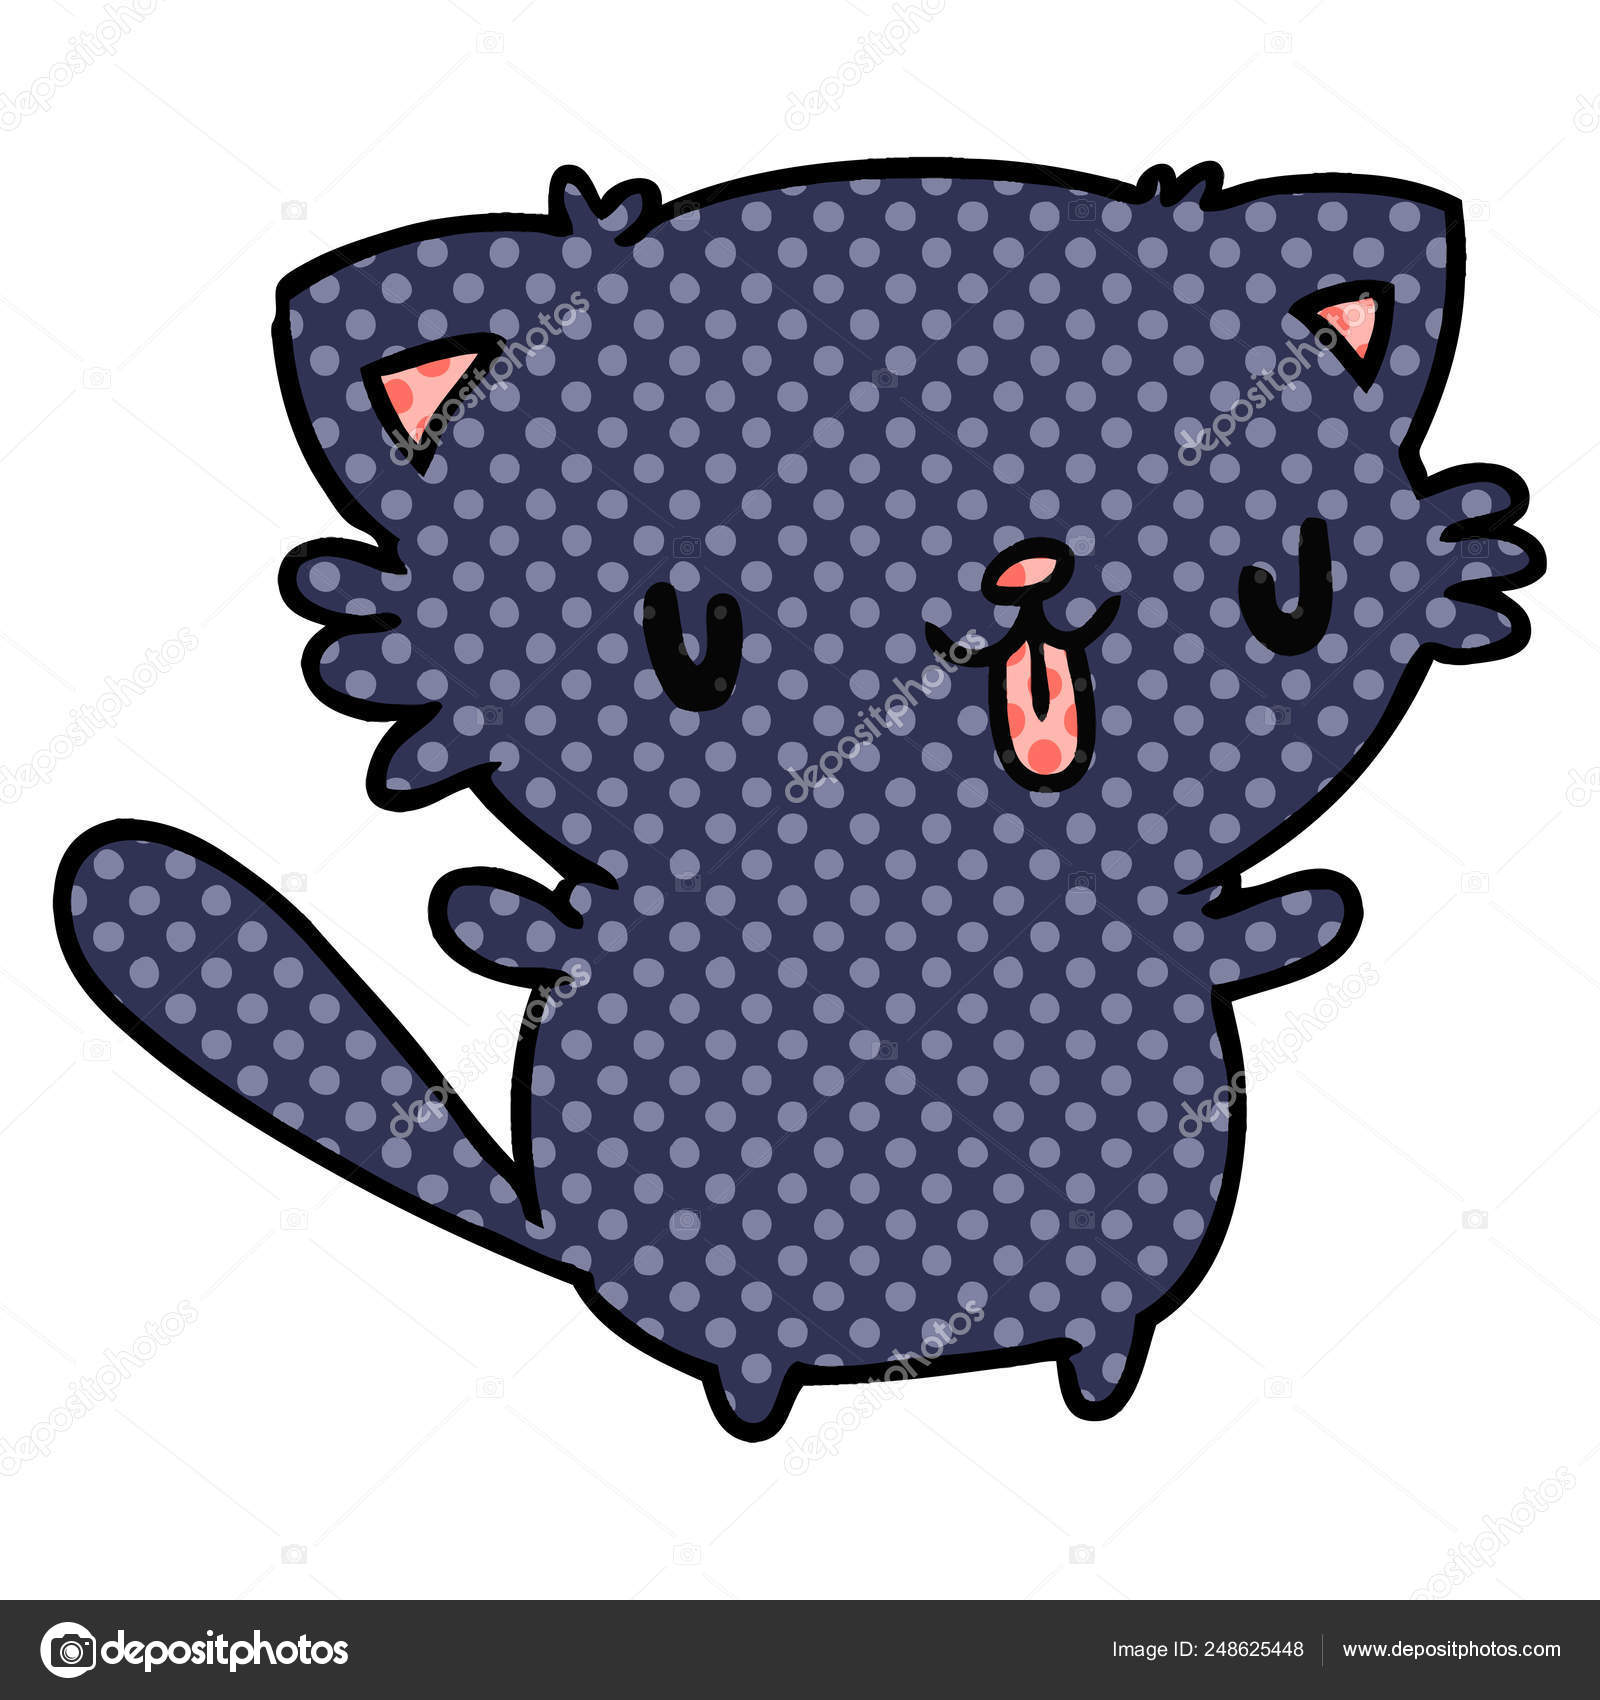 Como Desenhar Gato Kawaii 🐈 